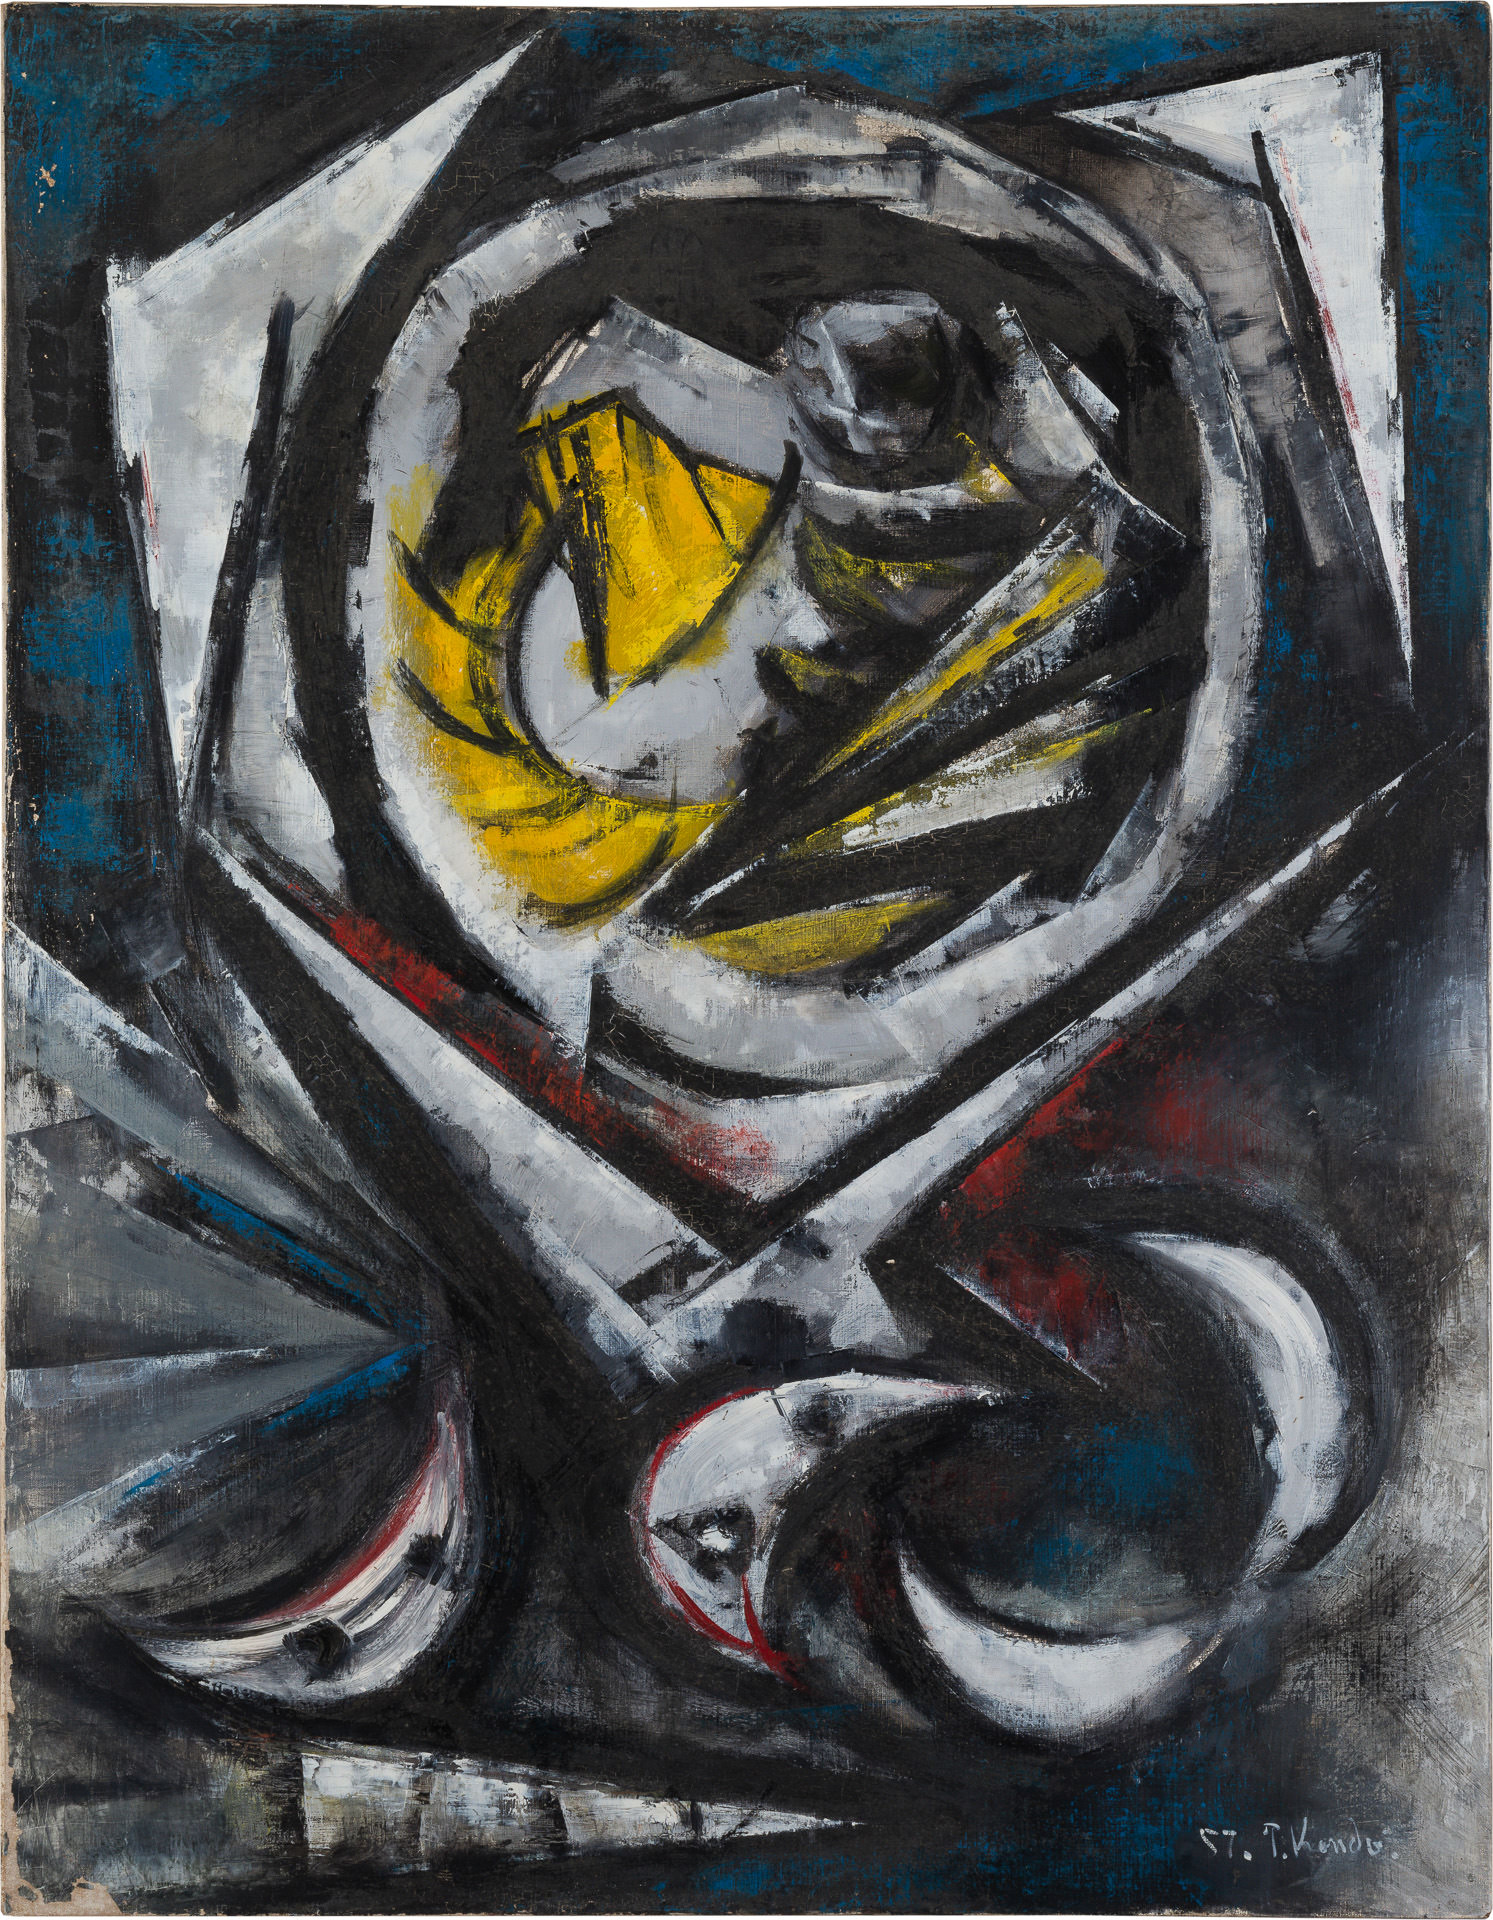 近藤竜男〈機構A（Composition）〉, 油彩・カンヴァス, 116.7×91.0, アジア青年美術展, 1957